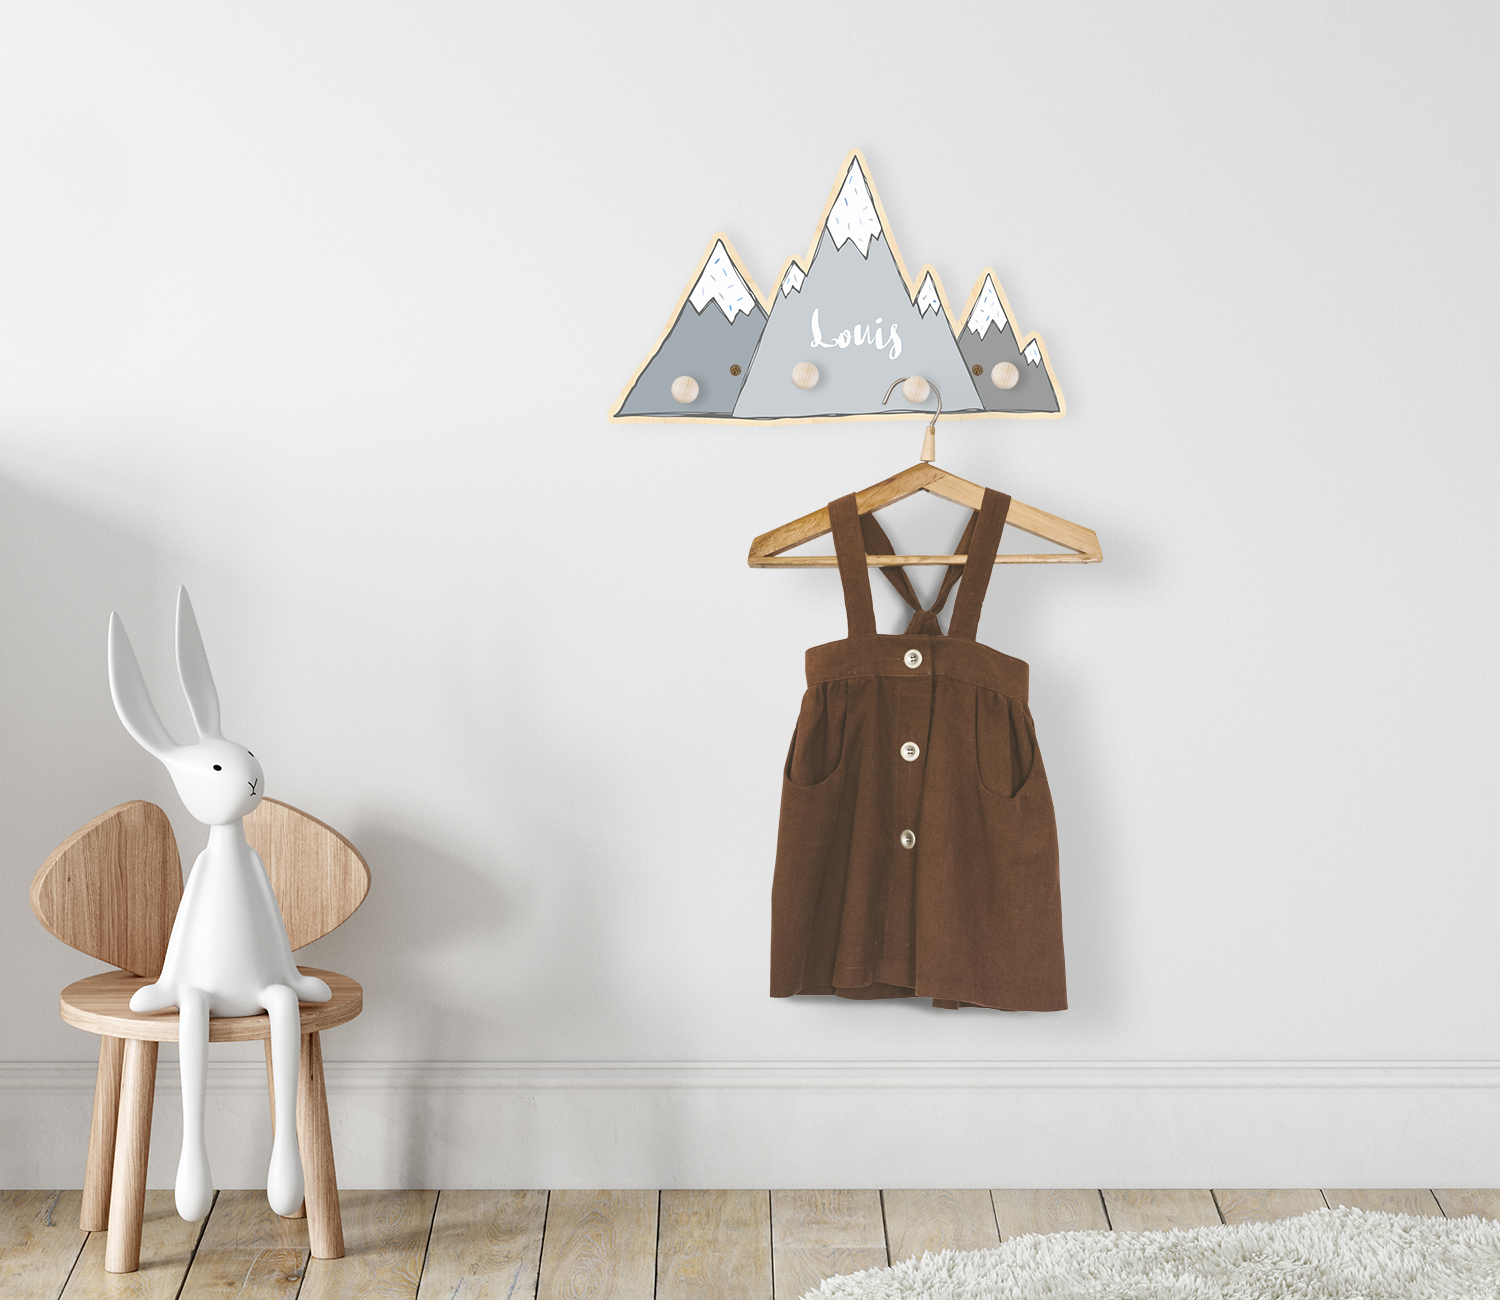 Die Kindergarderobe Gipfel an der Wand in einem Kinderzimmer montiert. An der Garderobe hängt ein Kleiderhaken mit einem Kleidungsstück.